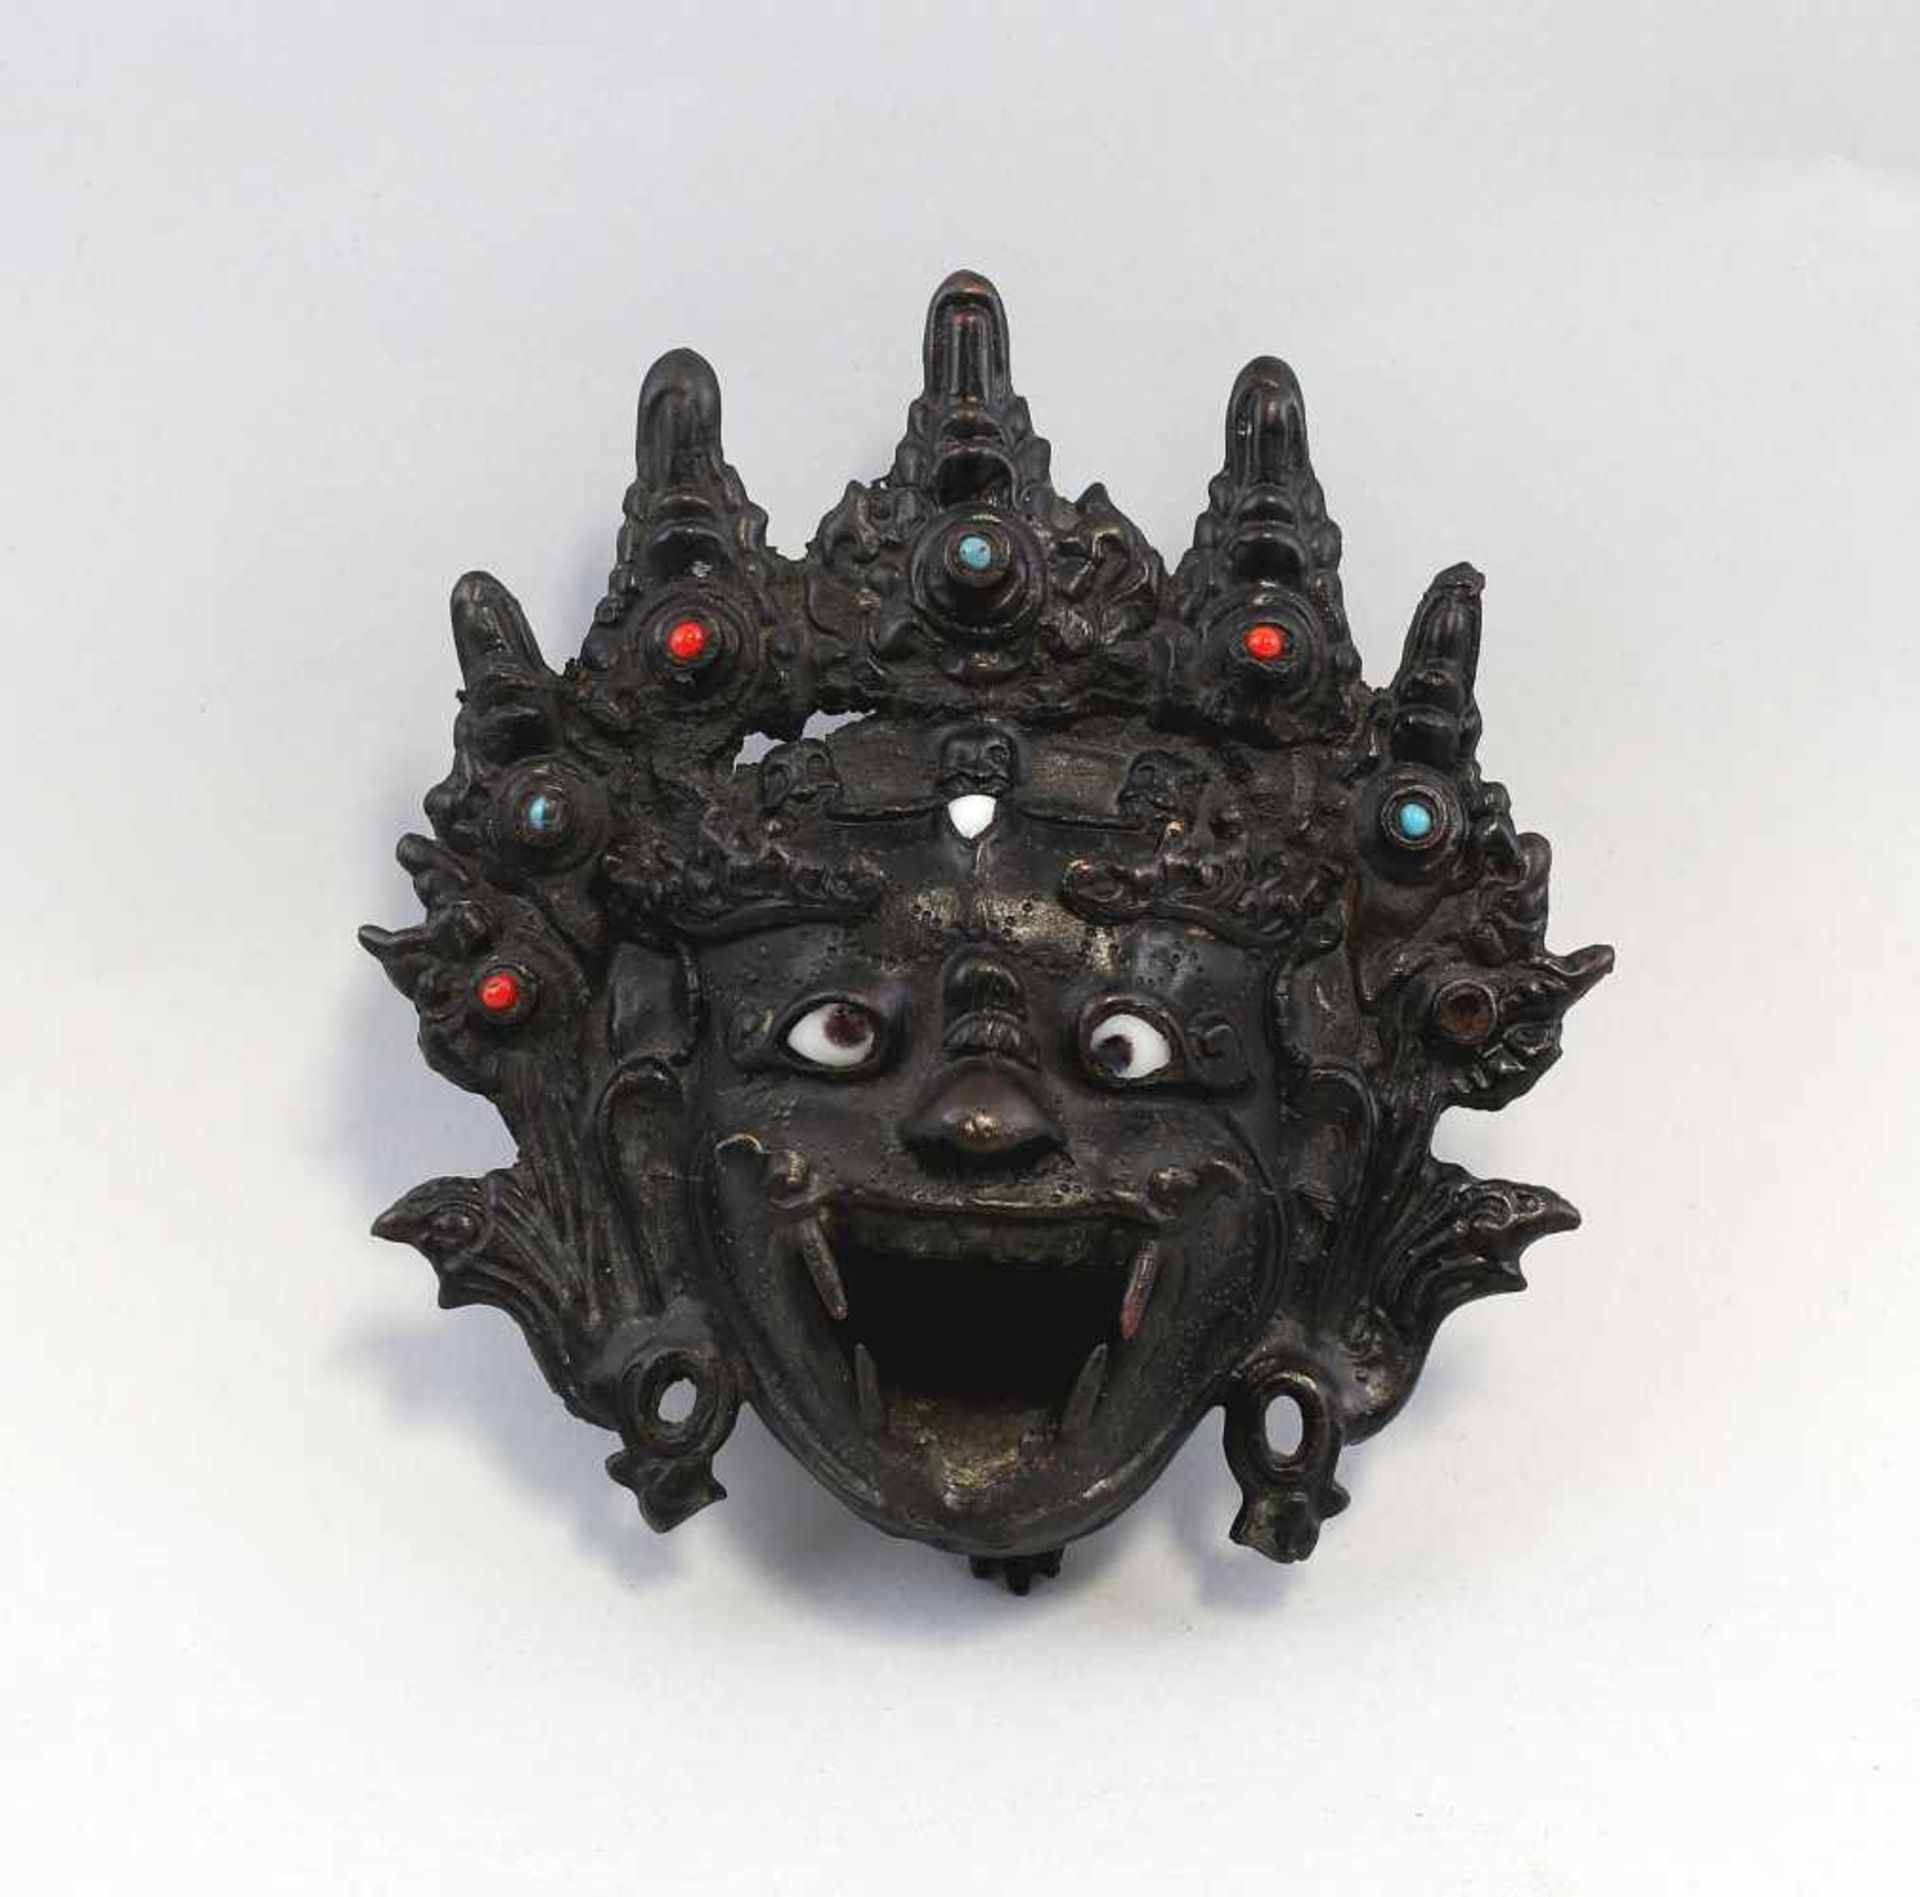 Räuchergefäß Dämonenkopfwohl Tibet/China, alt, Bronze mit dunkler Patina, auf 3 Beinen, Gefäß in